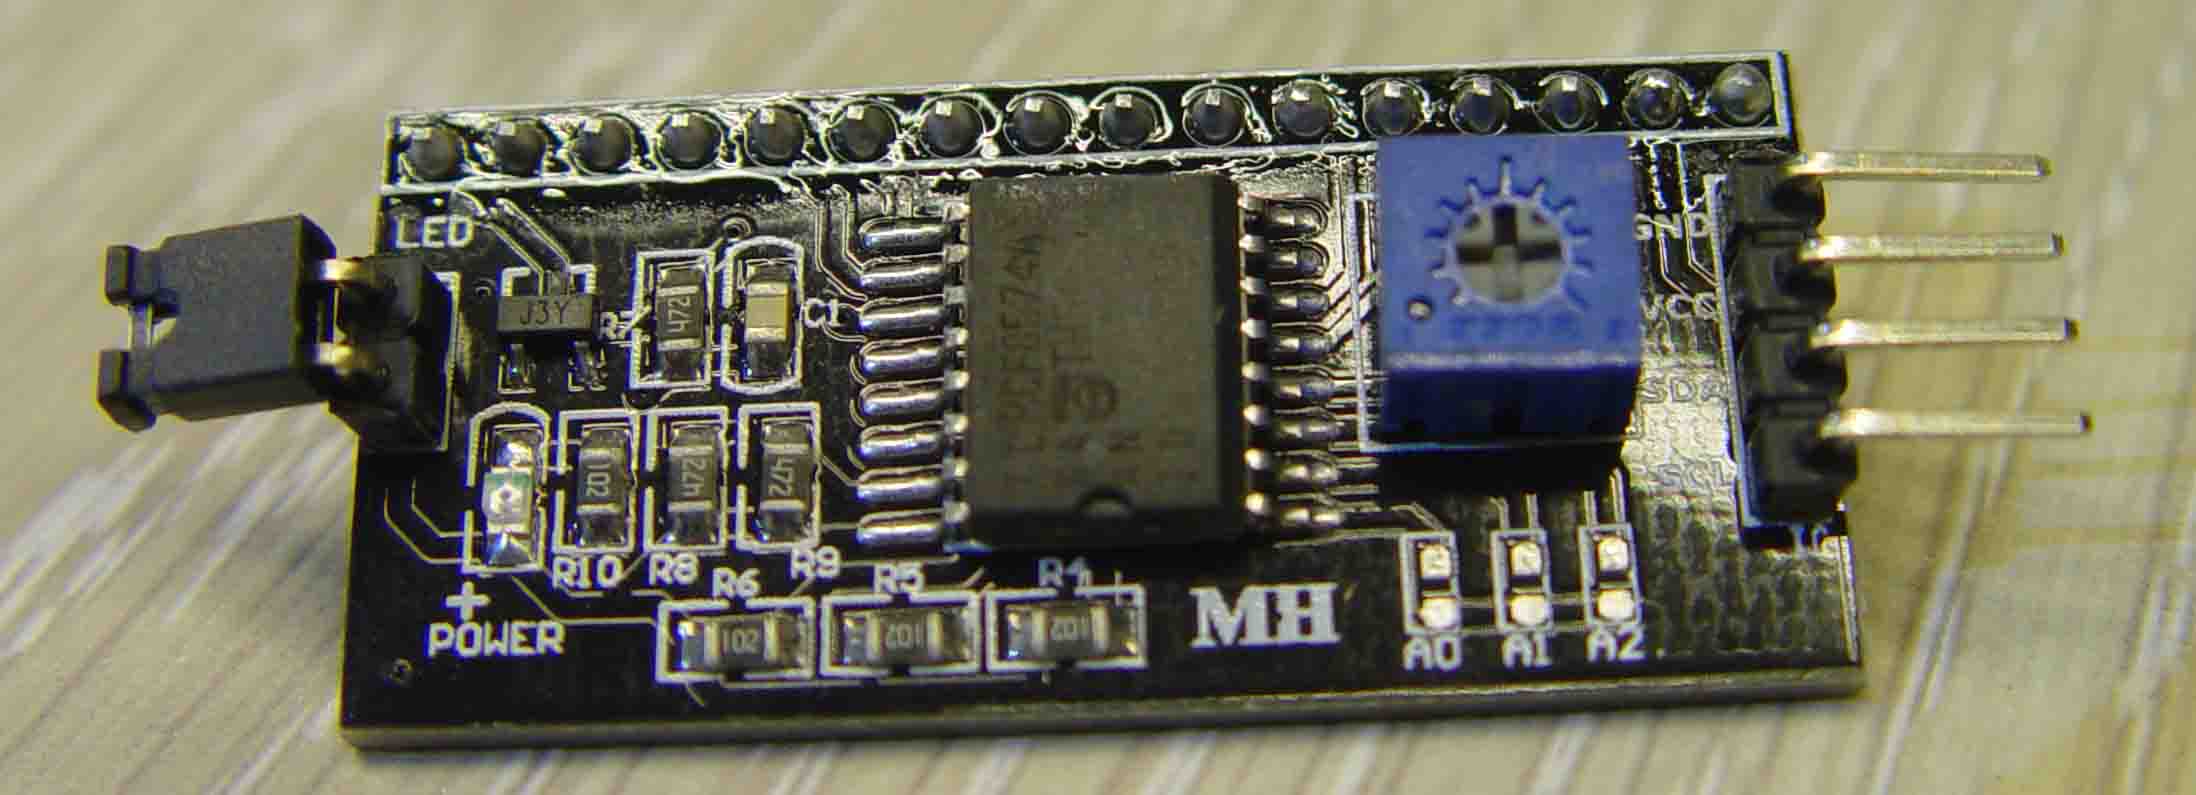 ماژول راه انداز LCD 2*16 با ارتباط I2C   مدل  PCF8574